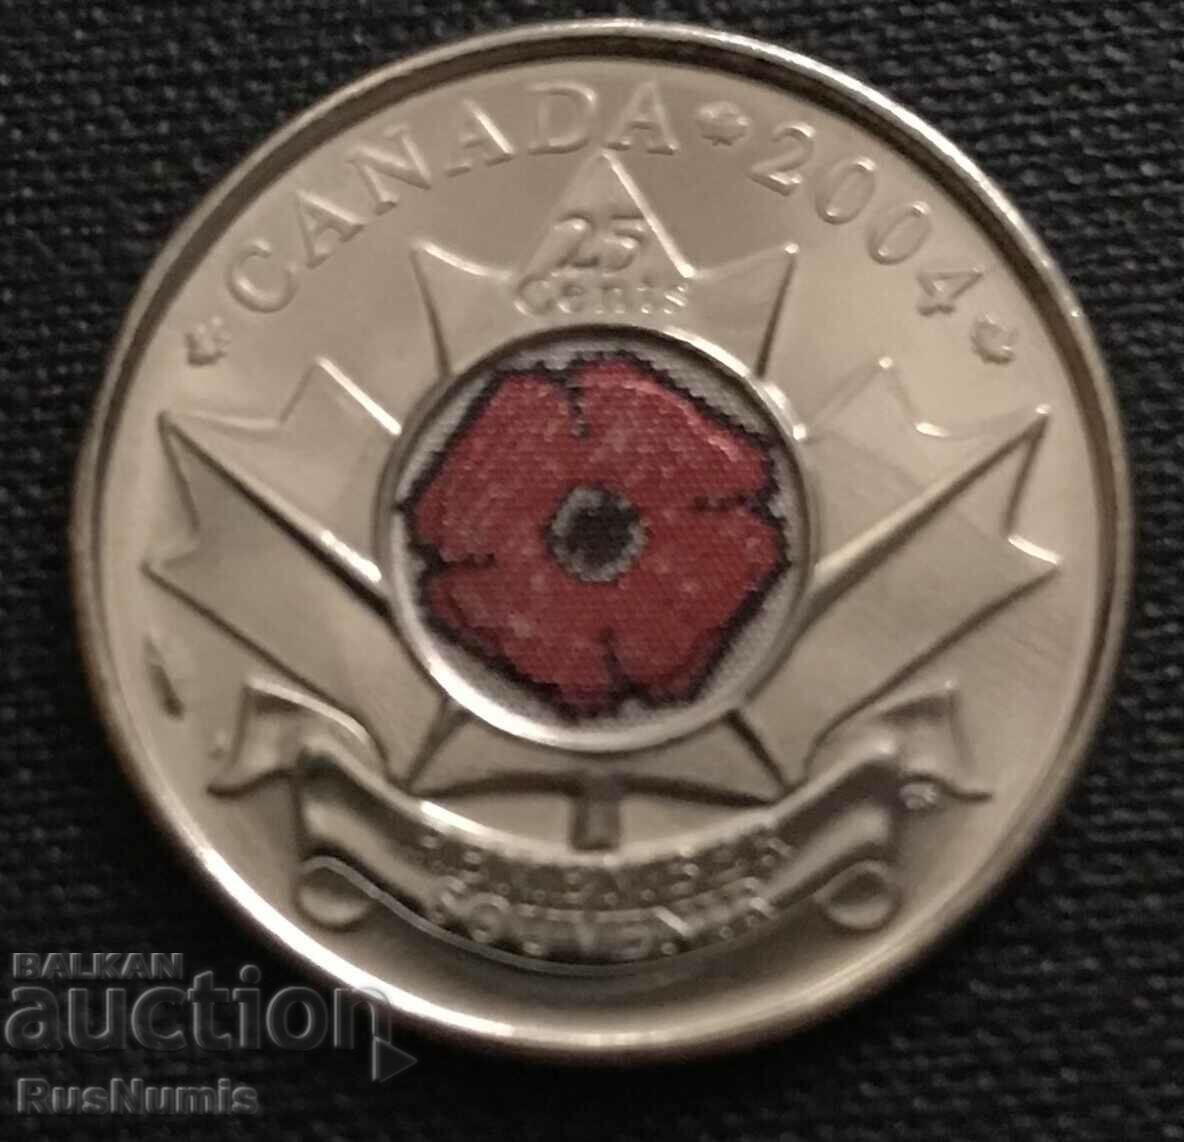 Канада. 25 цента 2004 г. Макова монета.UNC.